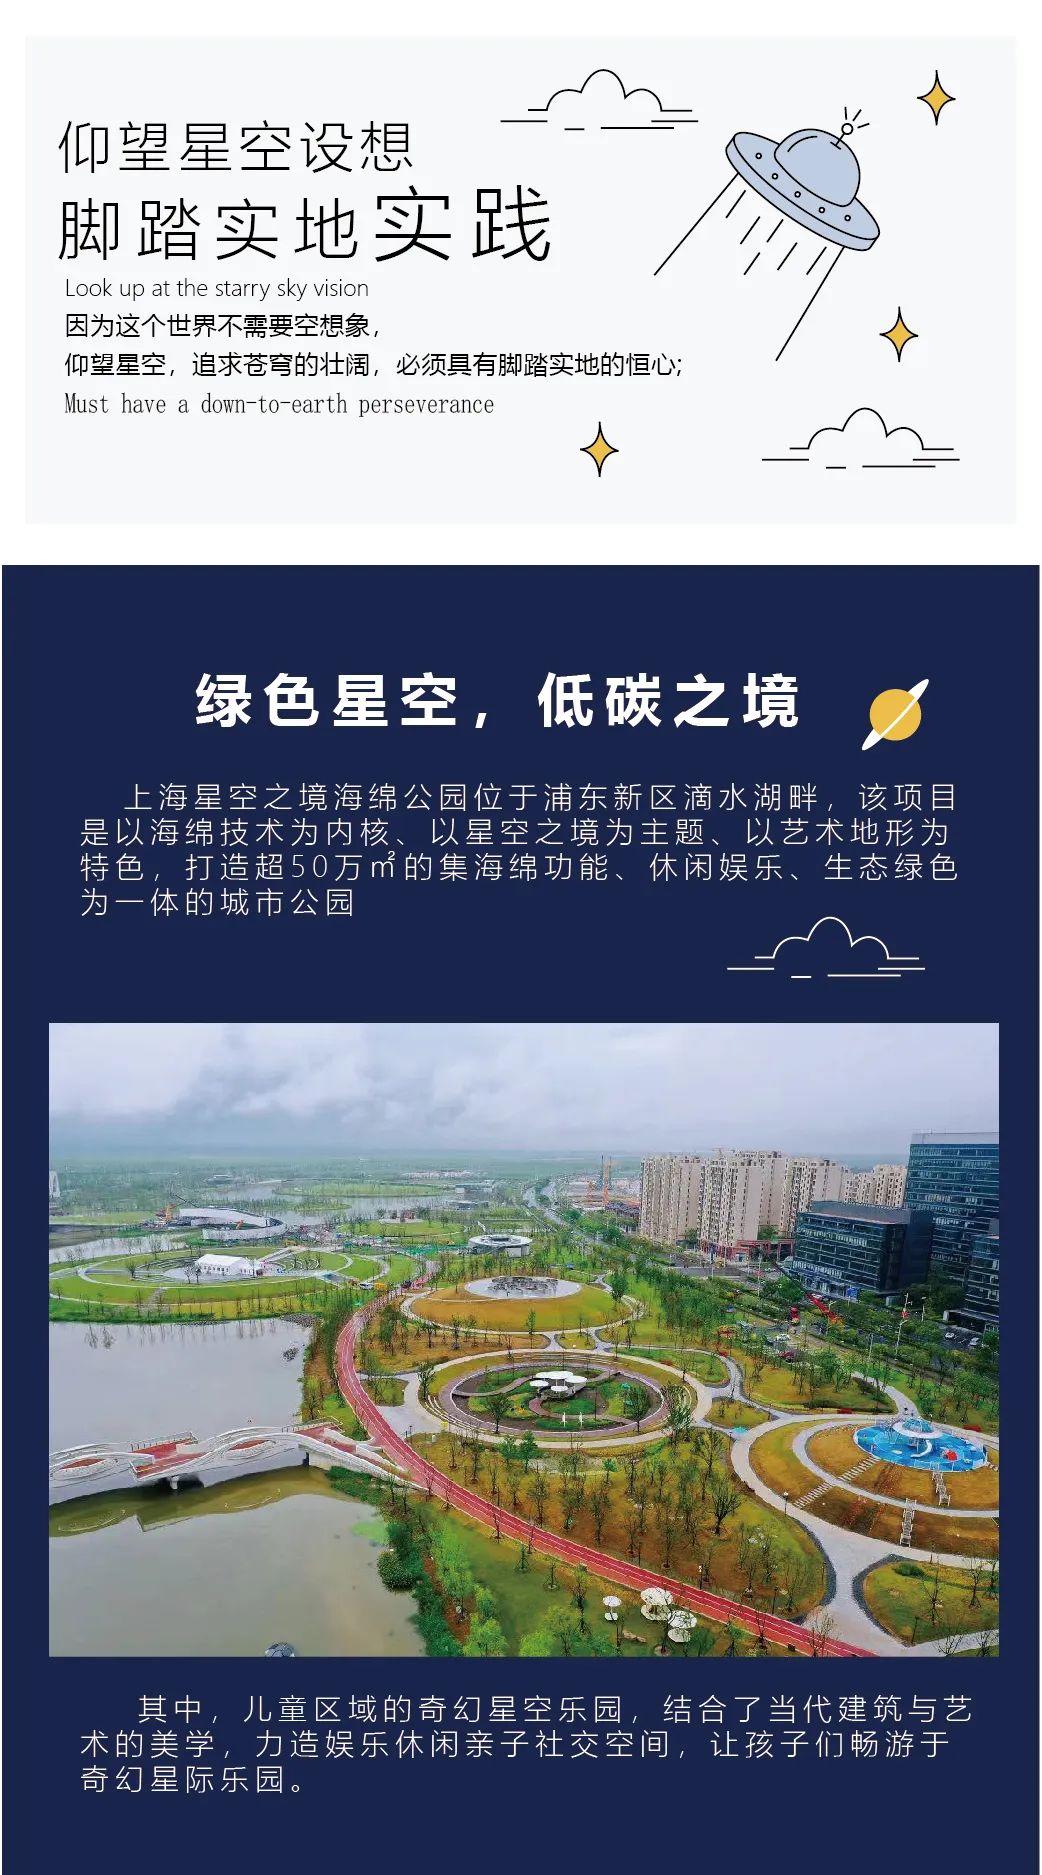 上海星空之镜海绵公园丨永浪集团